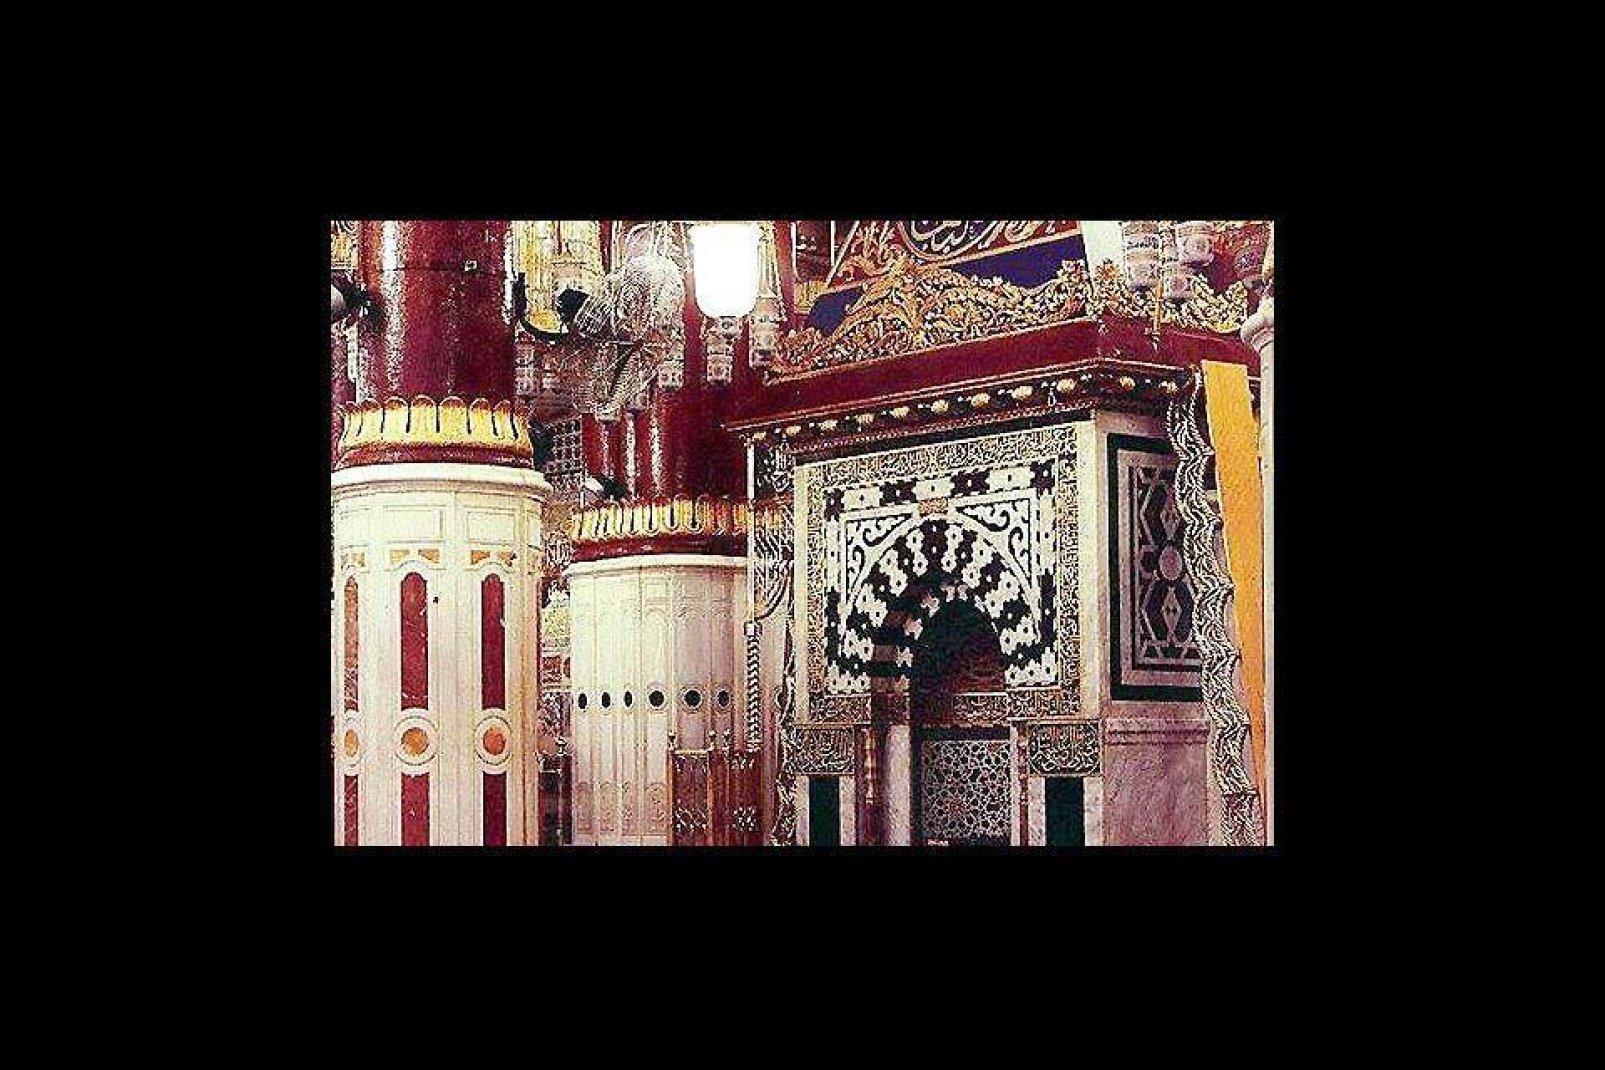 Medina alberga la mezquita del profeta del islam.